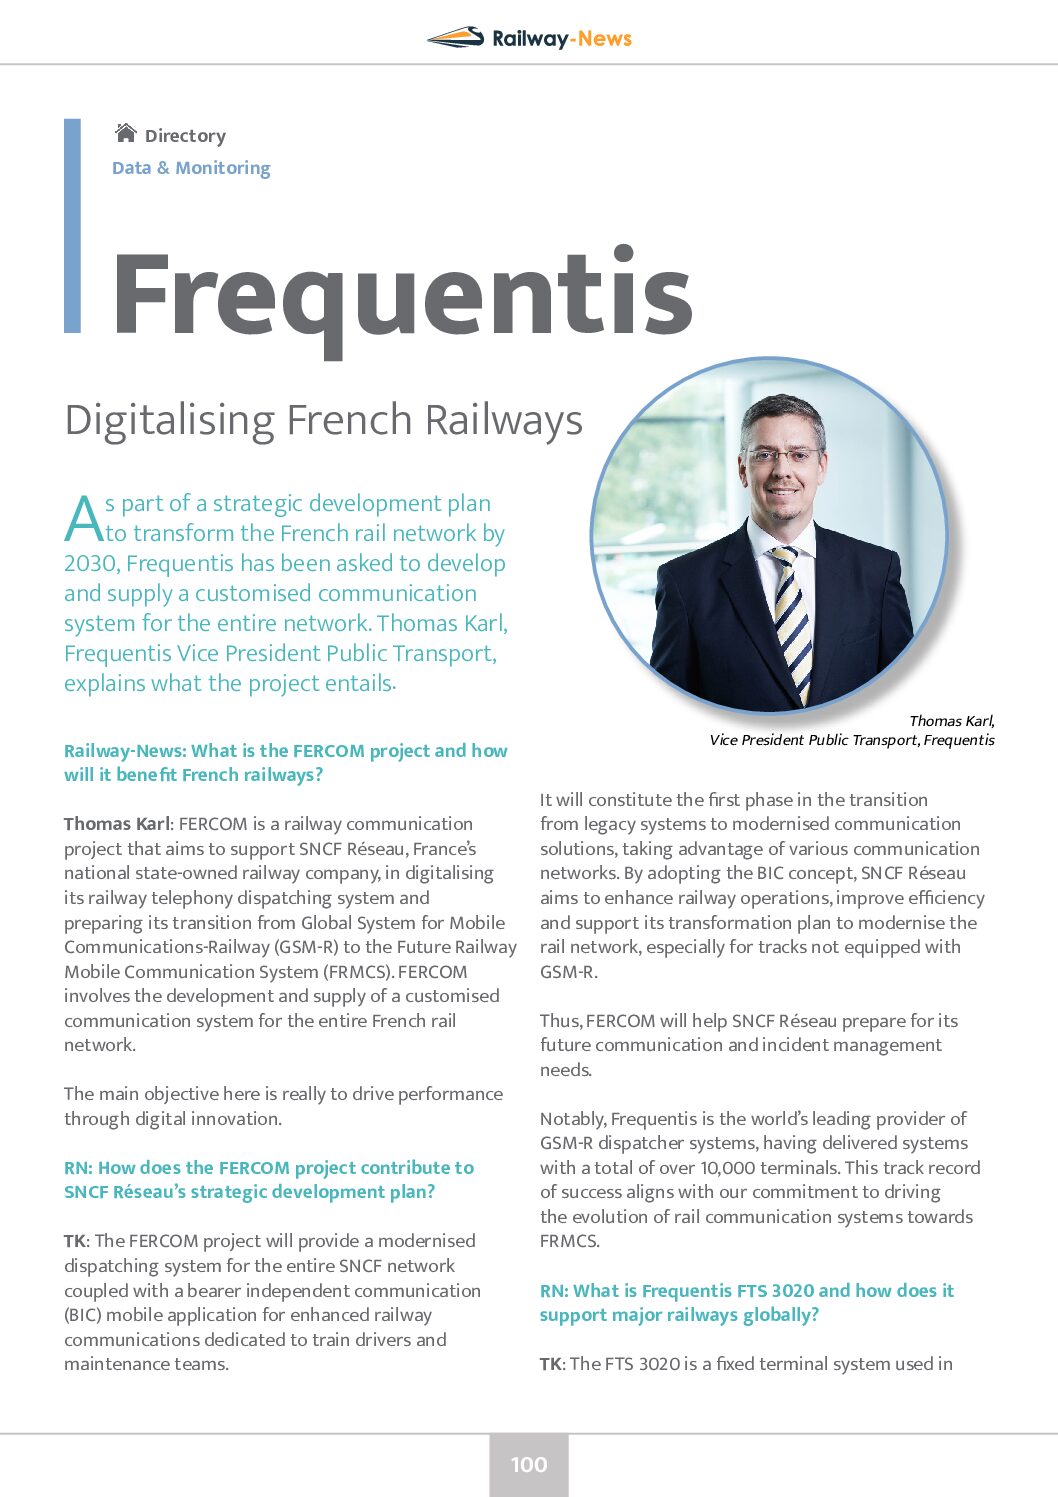 Digitalising French Railways